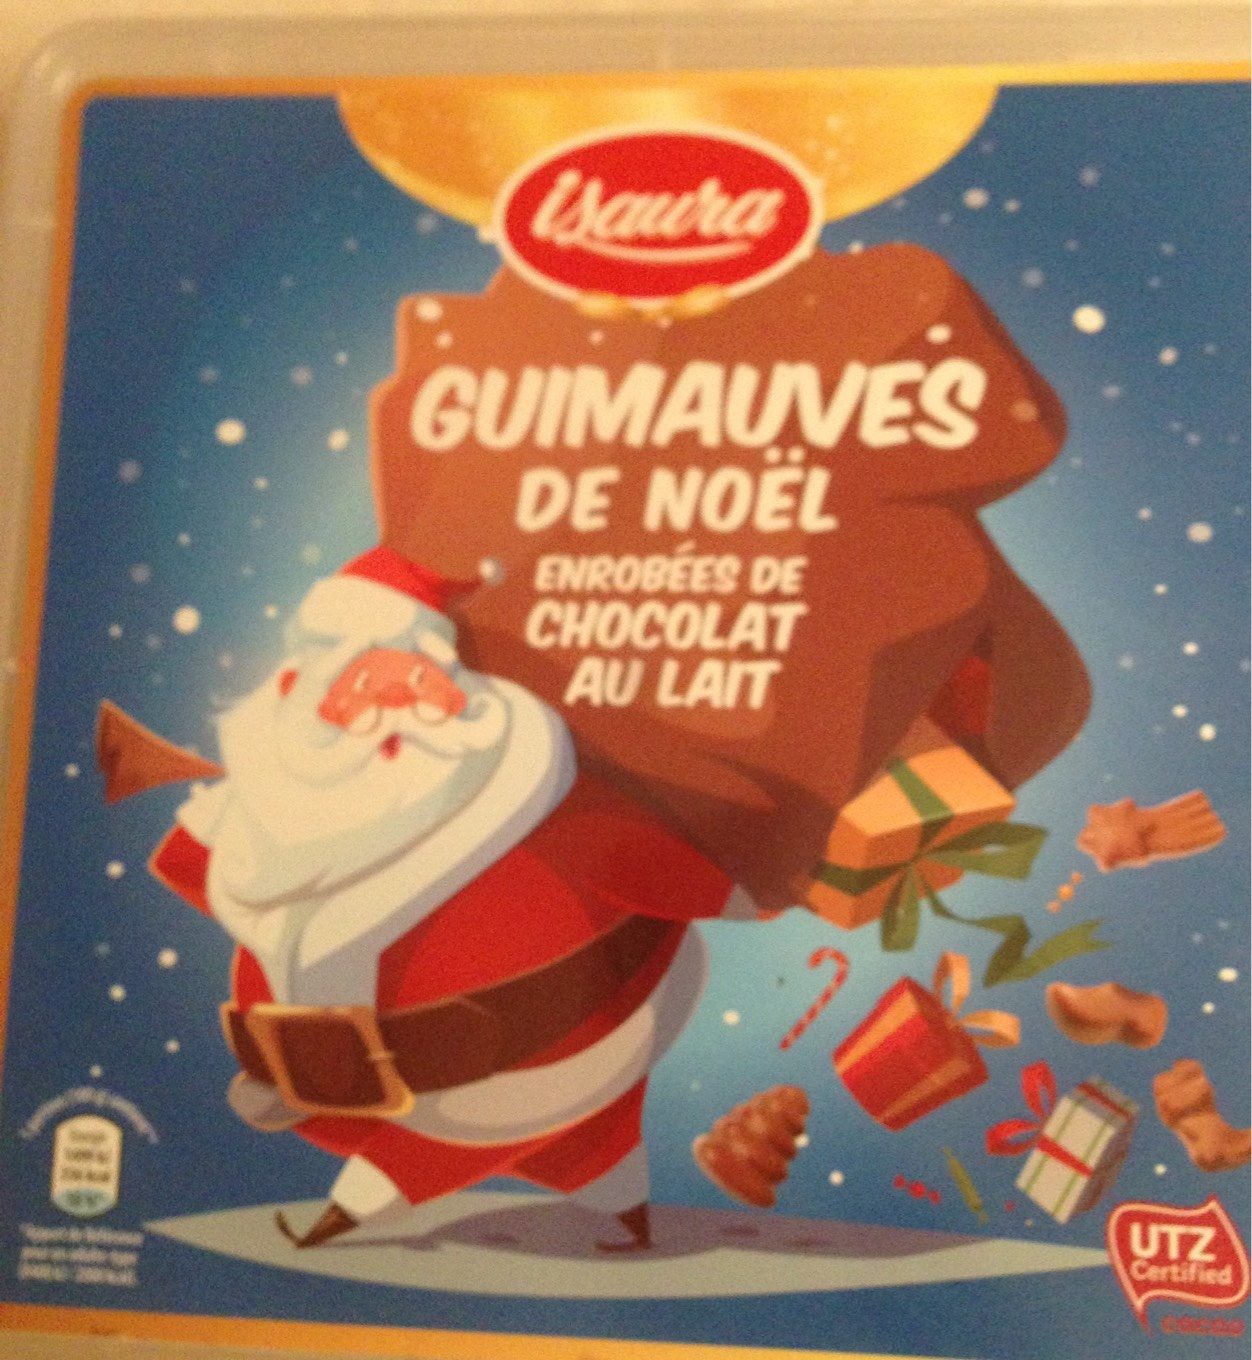 Guimauves de Noël Enrobées de Chocolat au Lait - Product - fr